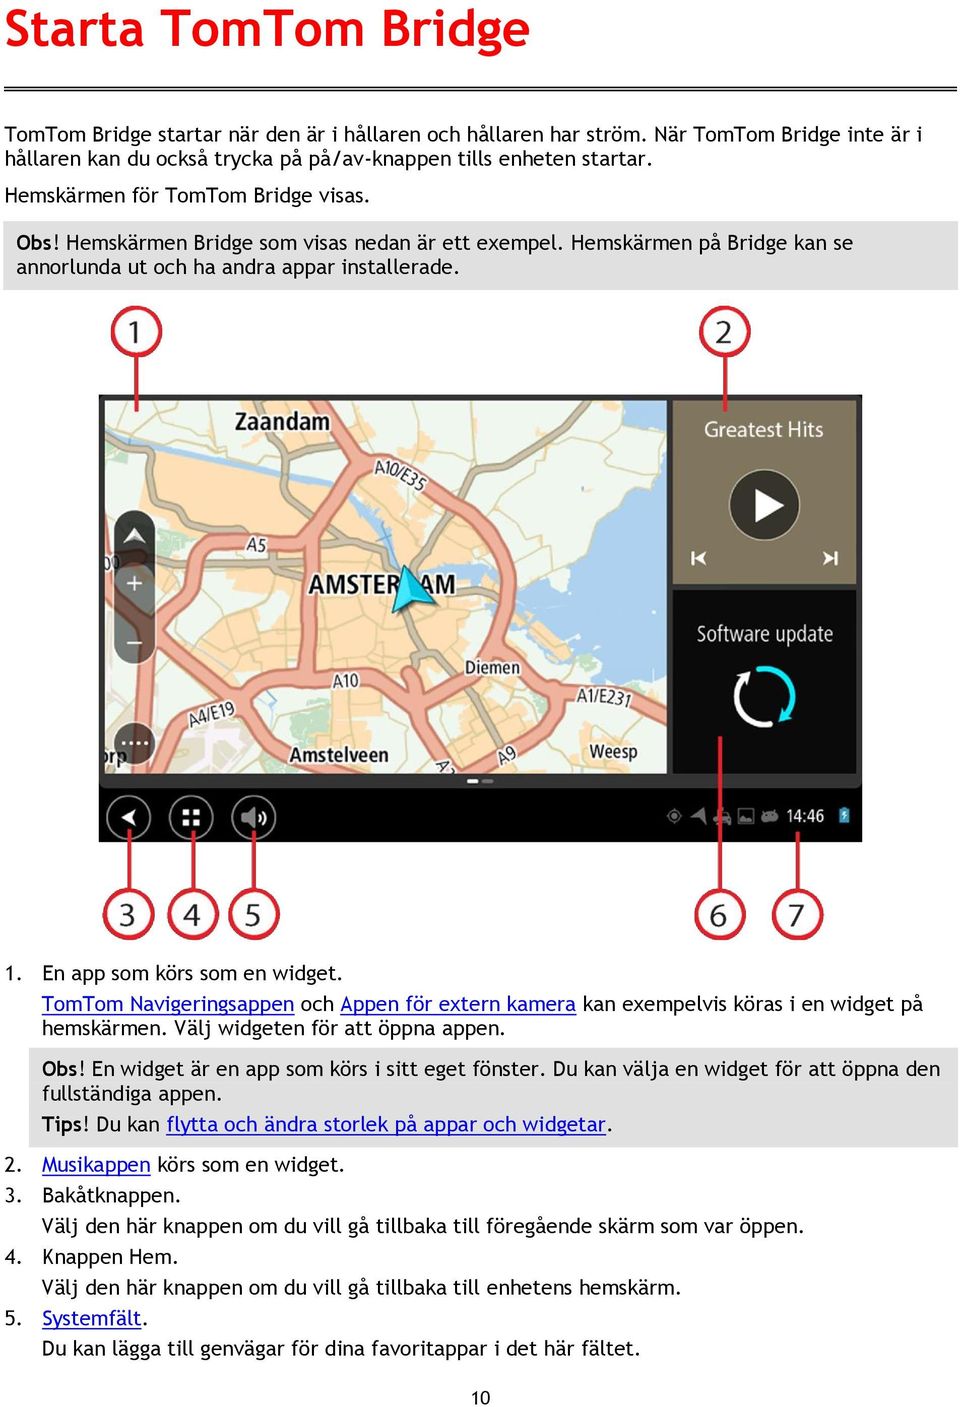 TomTom Navigeringsappen och Appen för extern kamera kan exempelvis köras i en widget på hemskärmen. Välj widgeten för att öppna appen. Obs! En widget är en app som körs i sitt eget fönster.